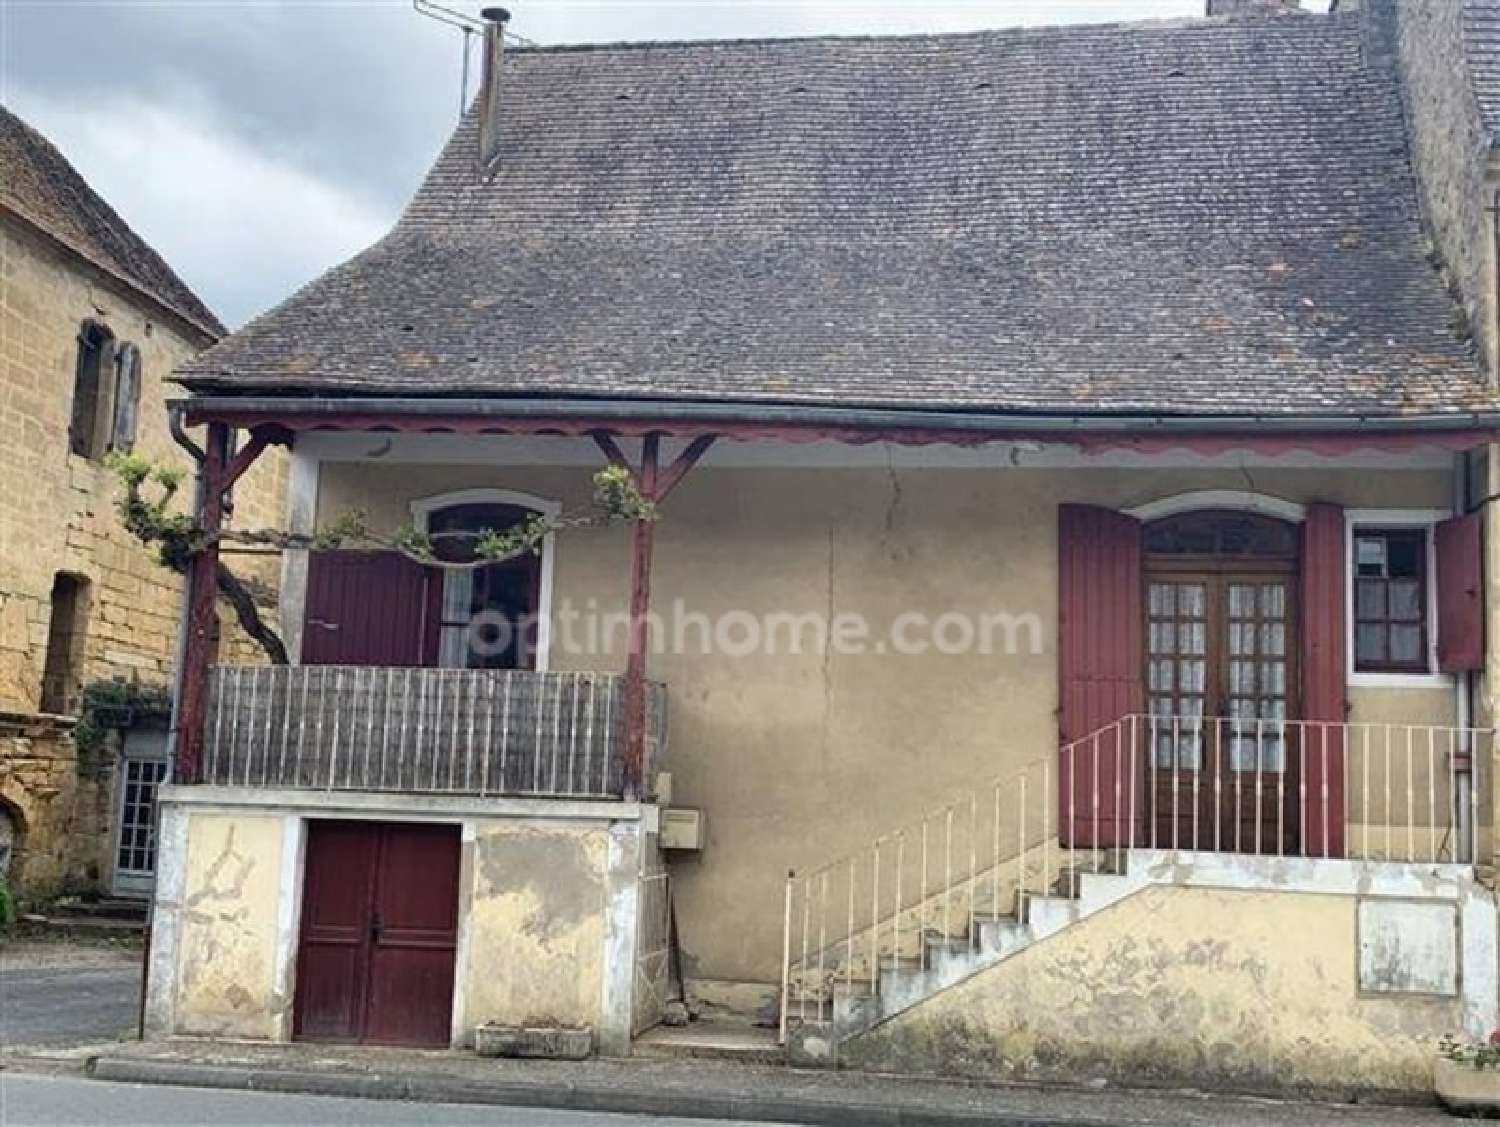  for sale village house Saint-Pompont Dordogne 1